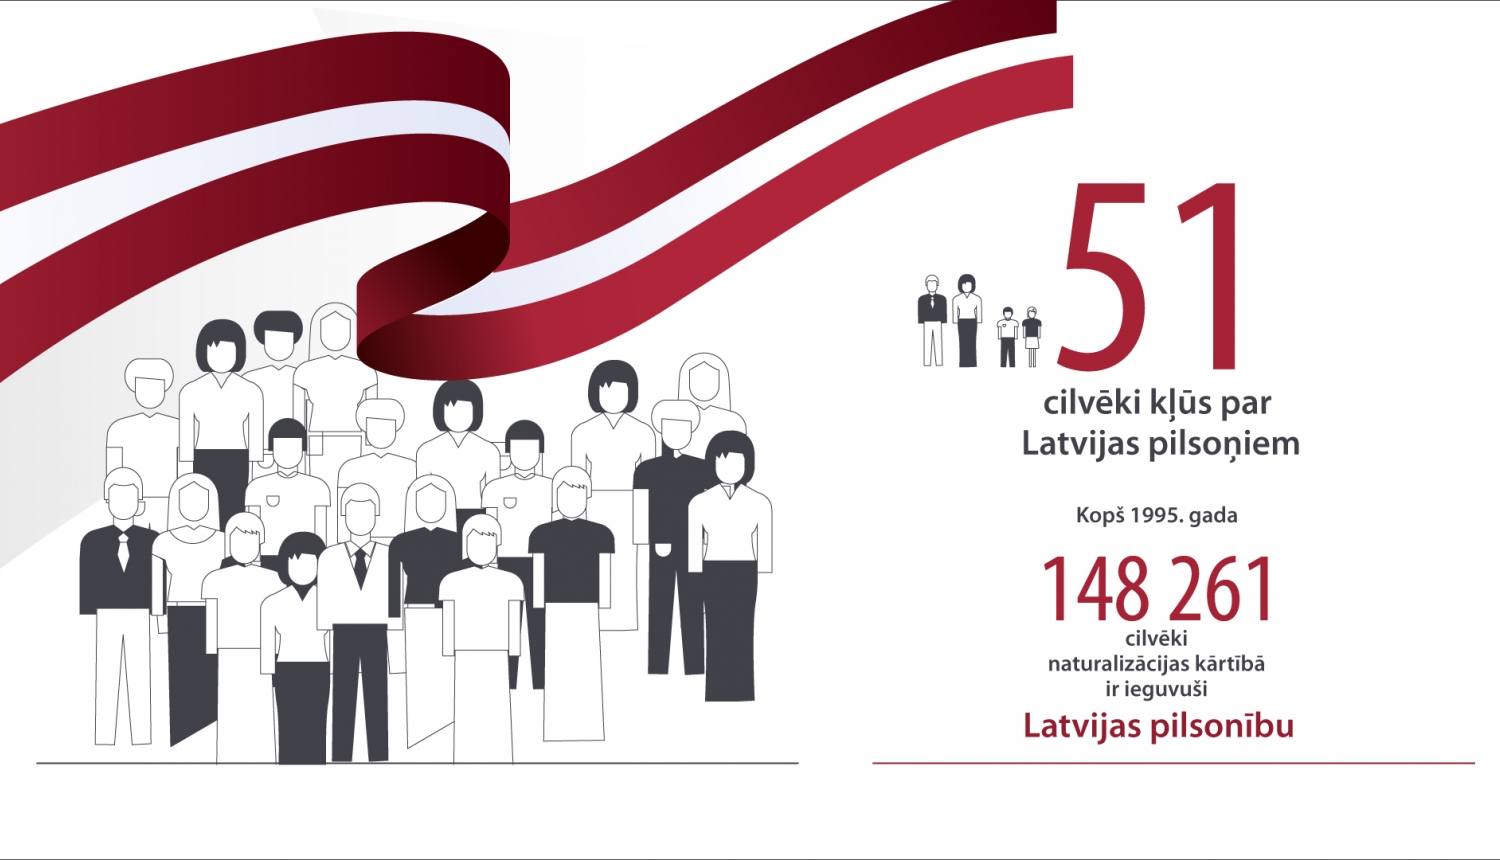 Latvijas pilsonībā uzņemta 51 persona